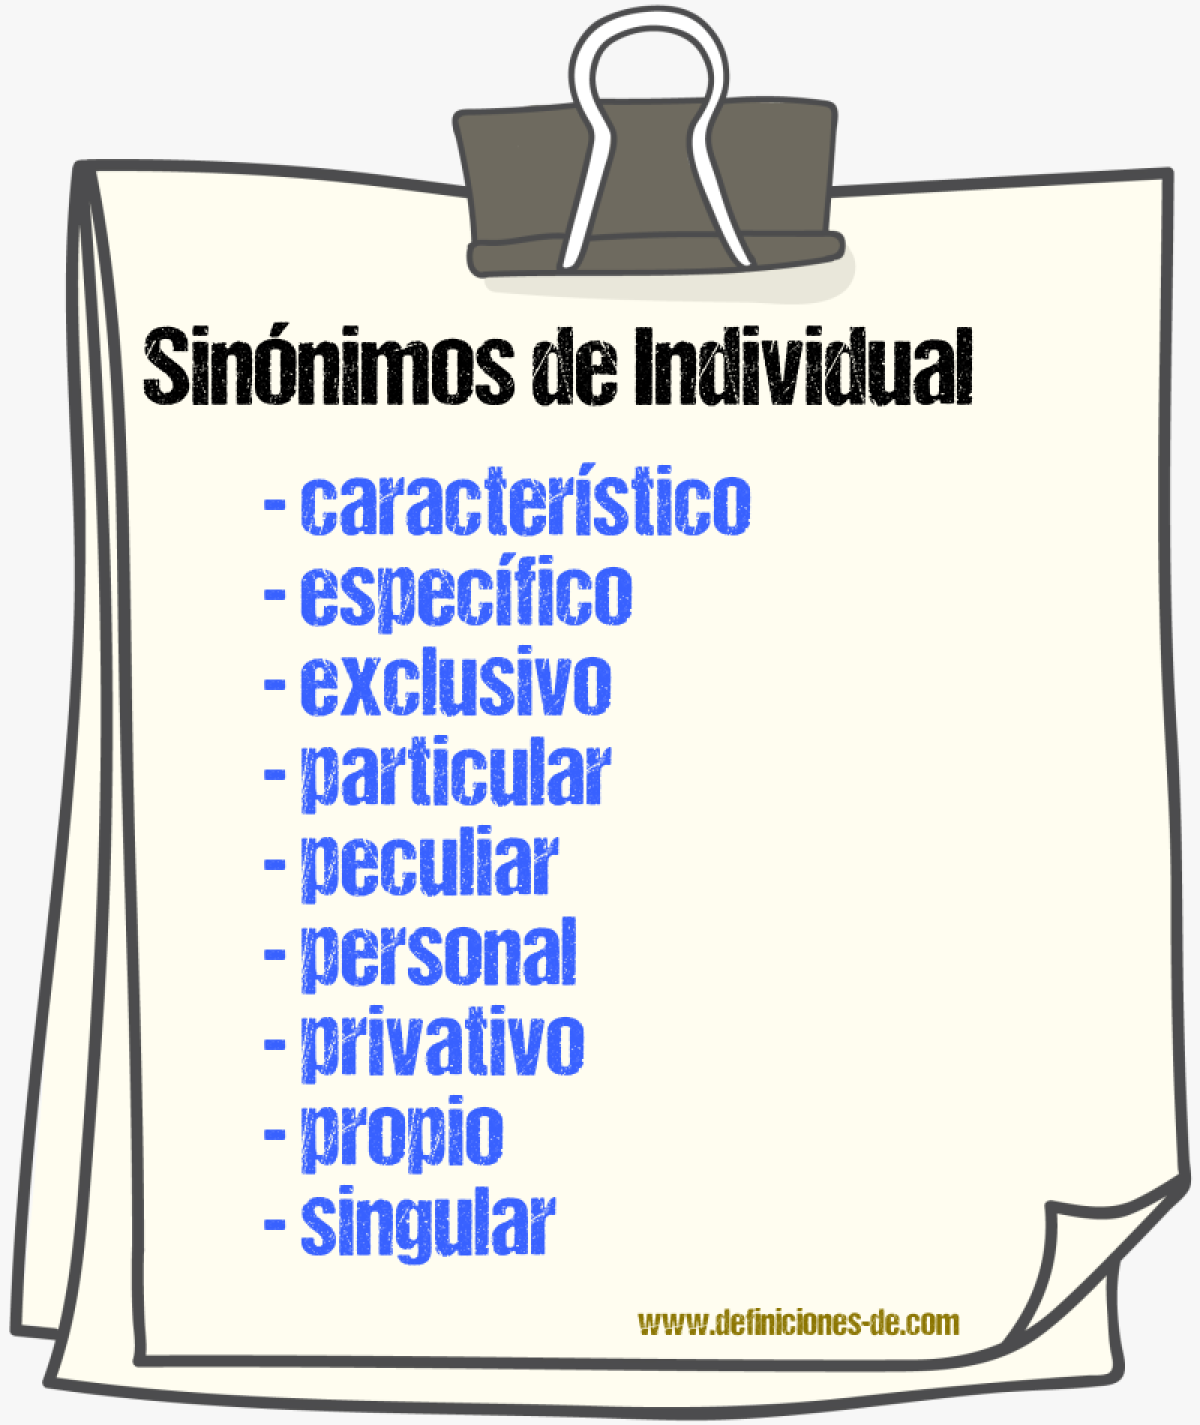 Sinónimos de individual